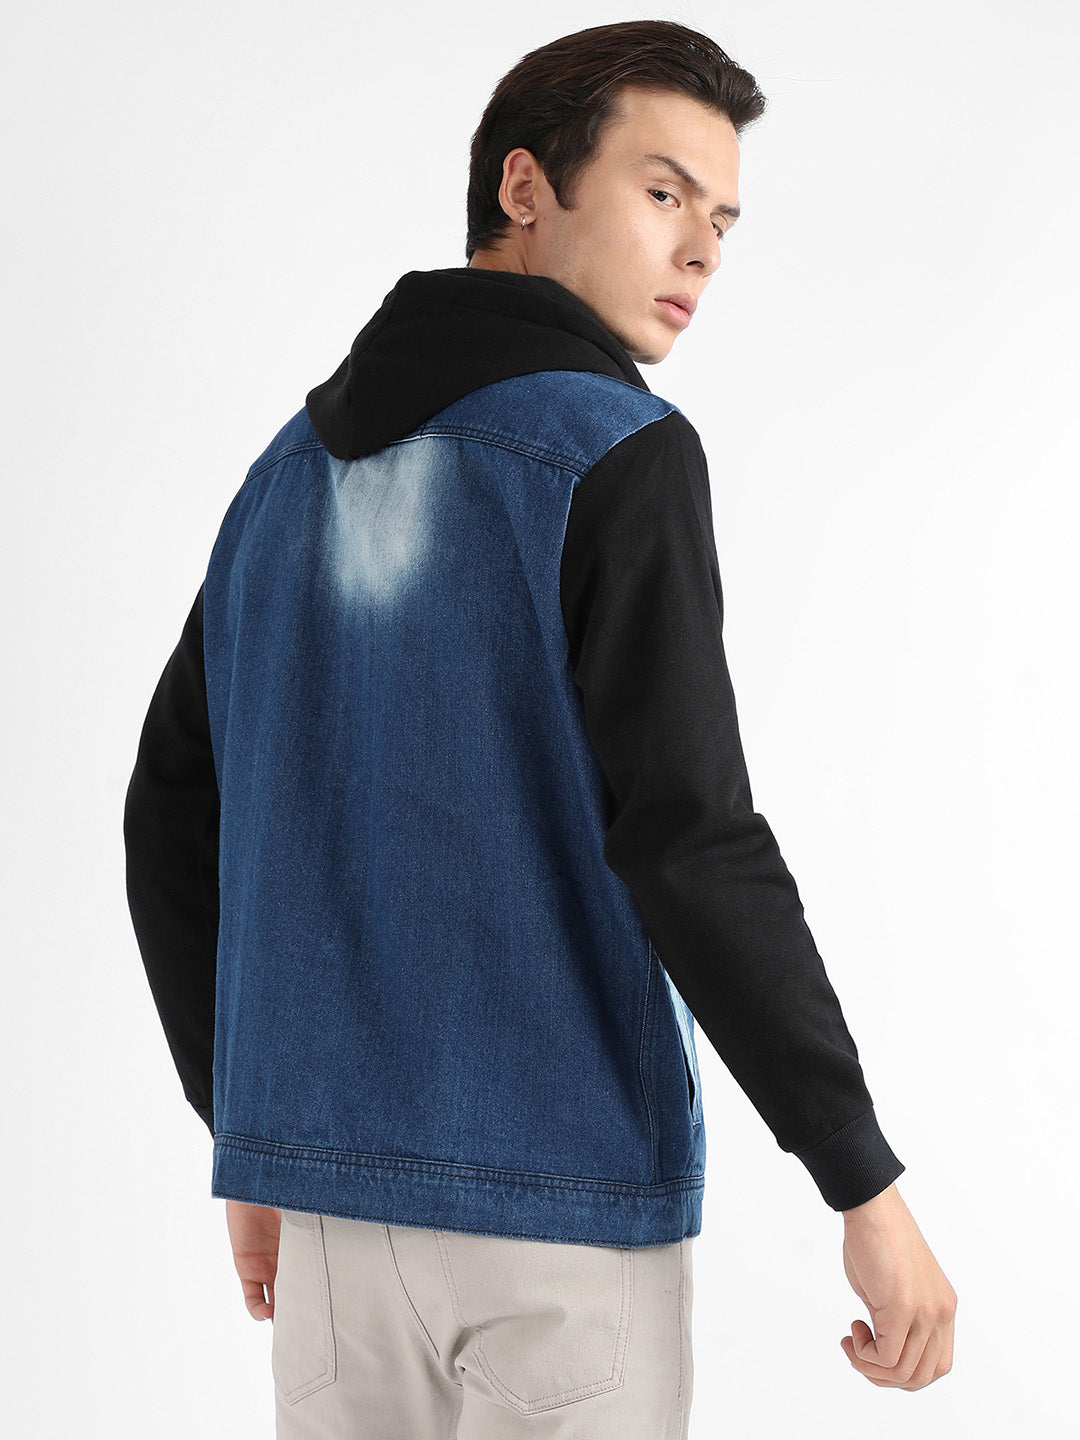 Medium-Wash Denim Jacket With Sweatshirt Sleeve